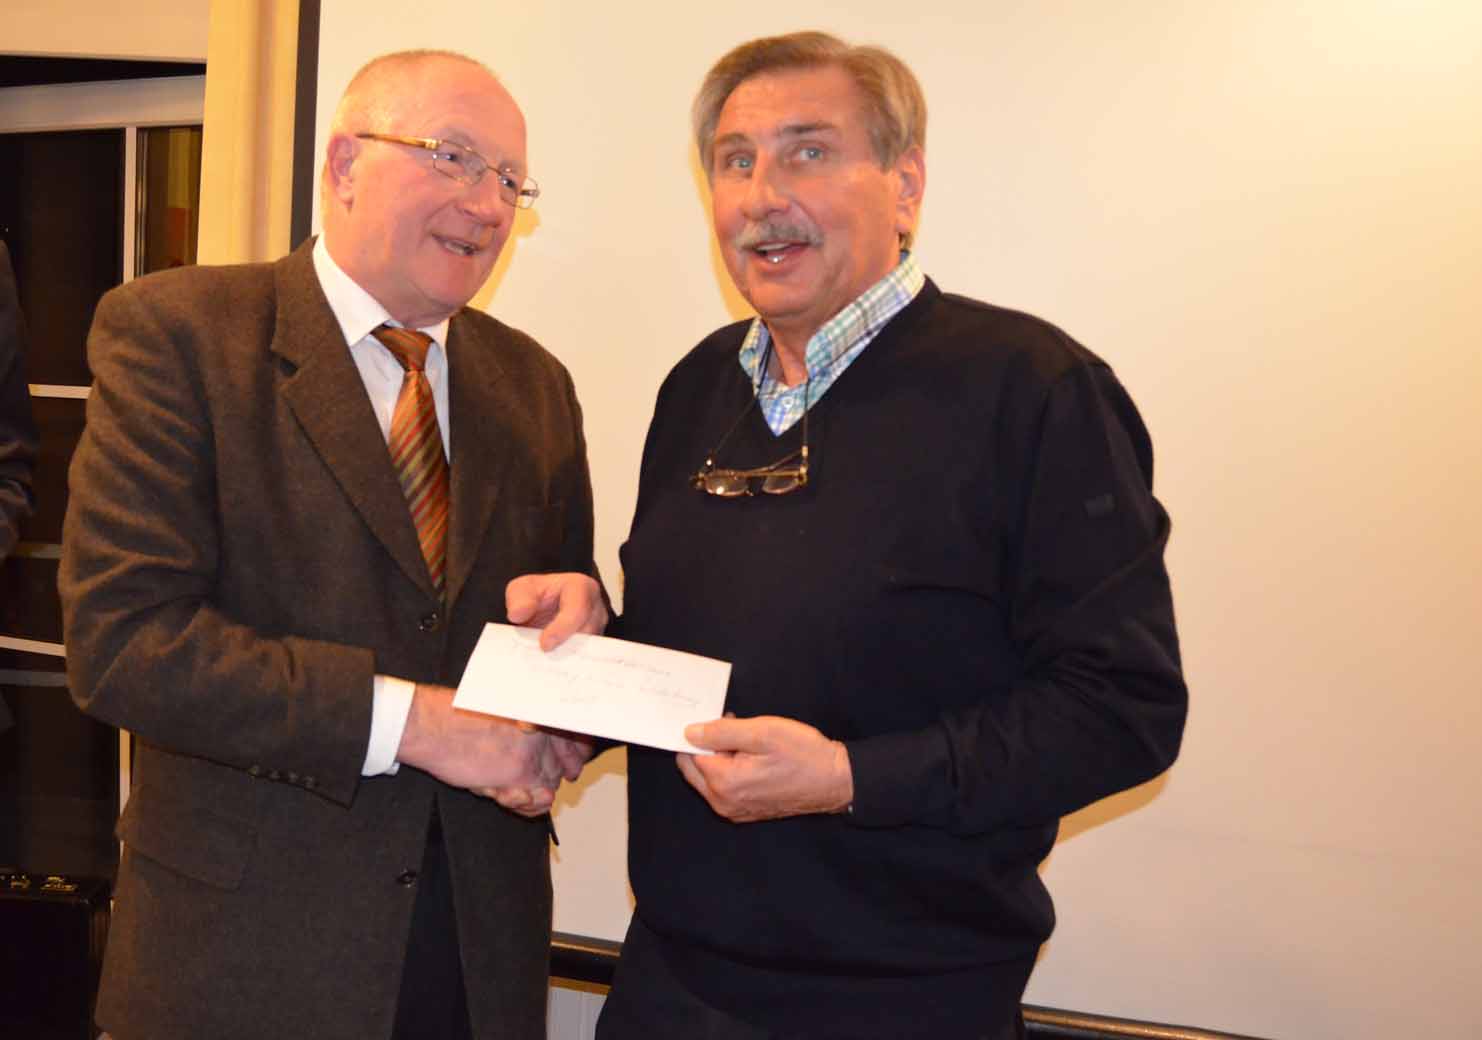 Rainer Zorn überreicht eine Spende des Rotary-Clubs und bedankt sich gleichzeitig für eine eindrucksvolle Führung im Heimatmuseum.